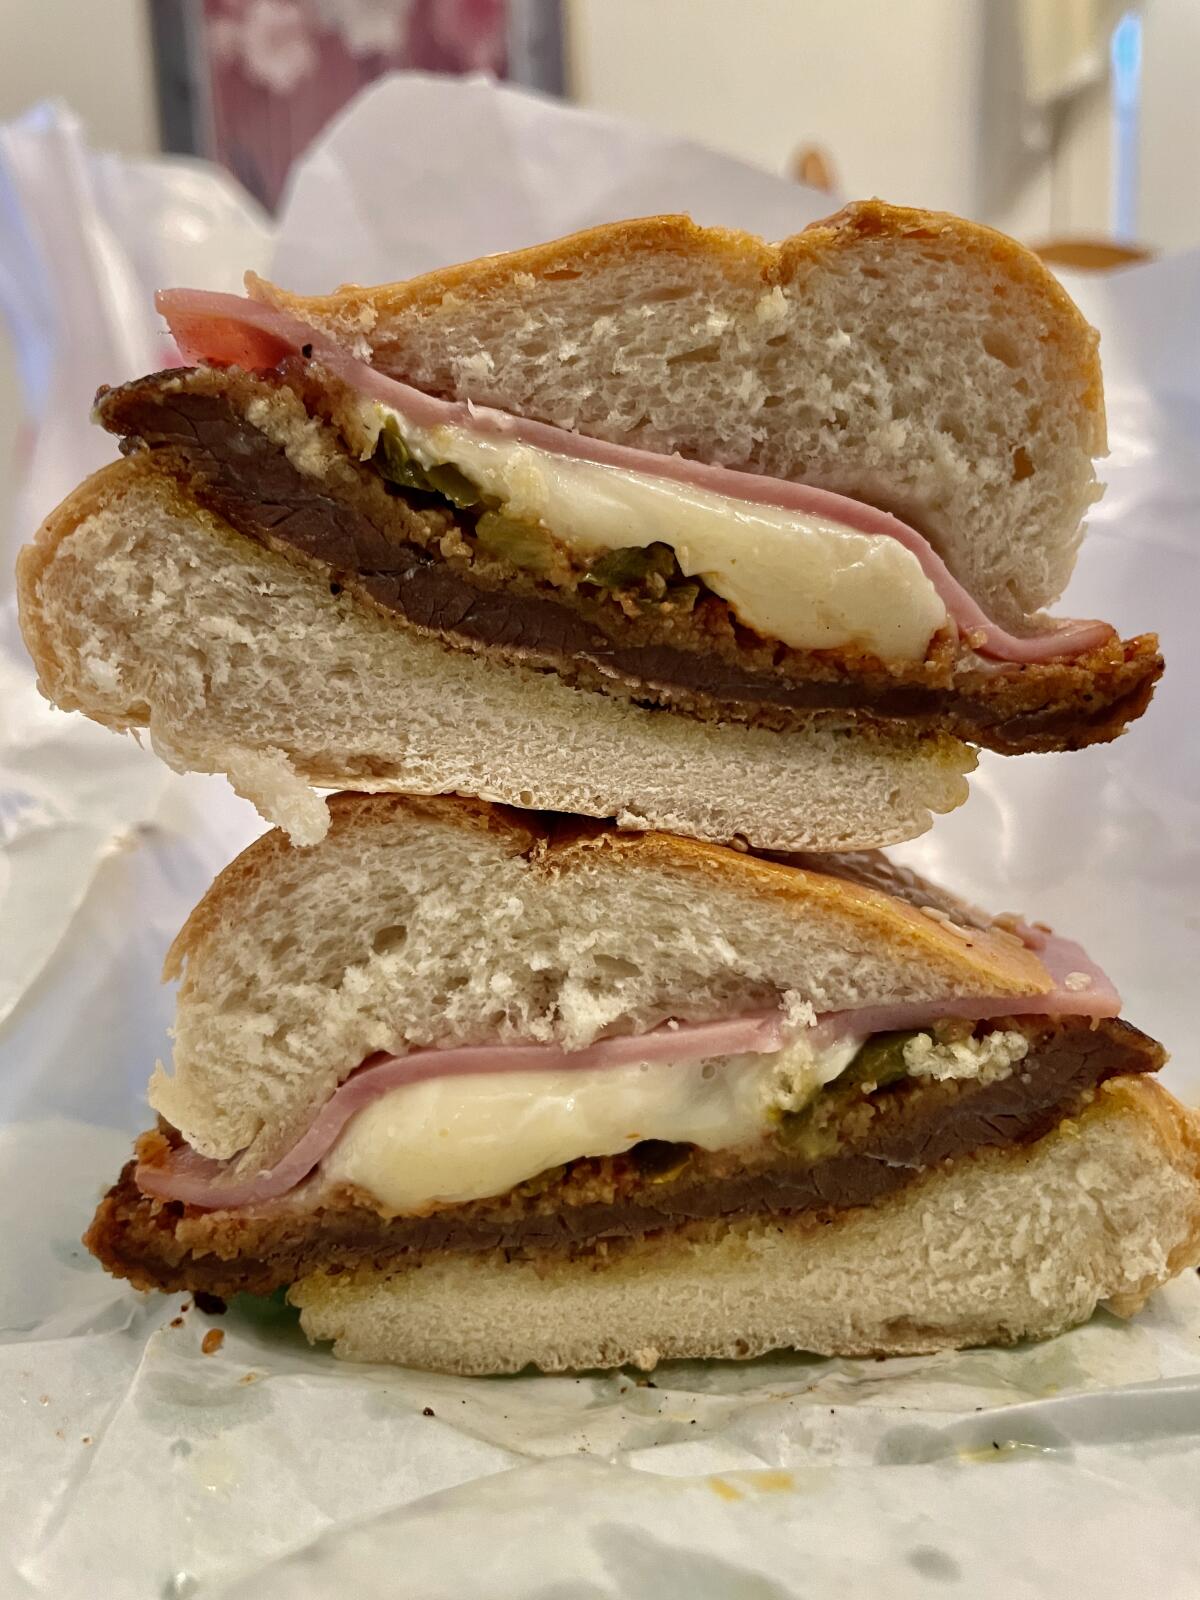 Close-up of a sandwich cut in half.